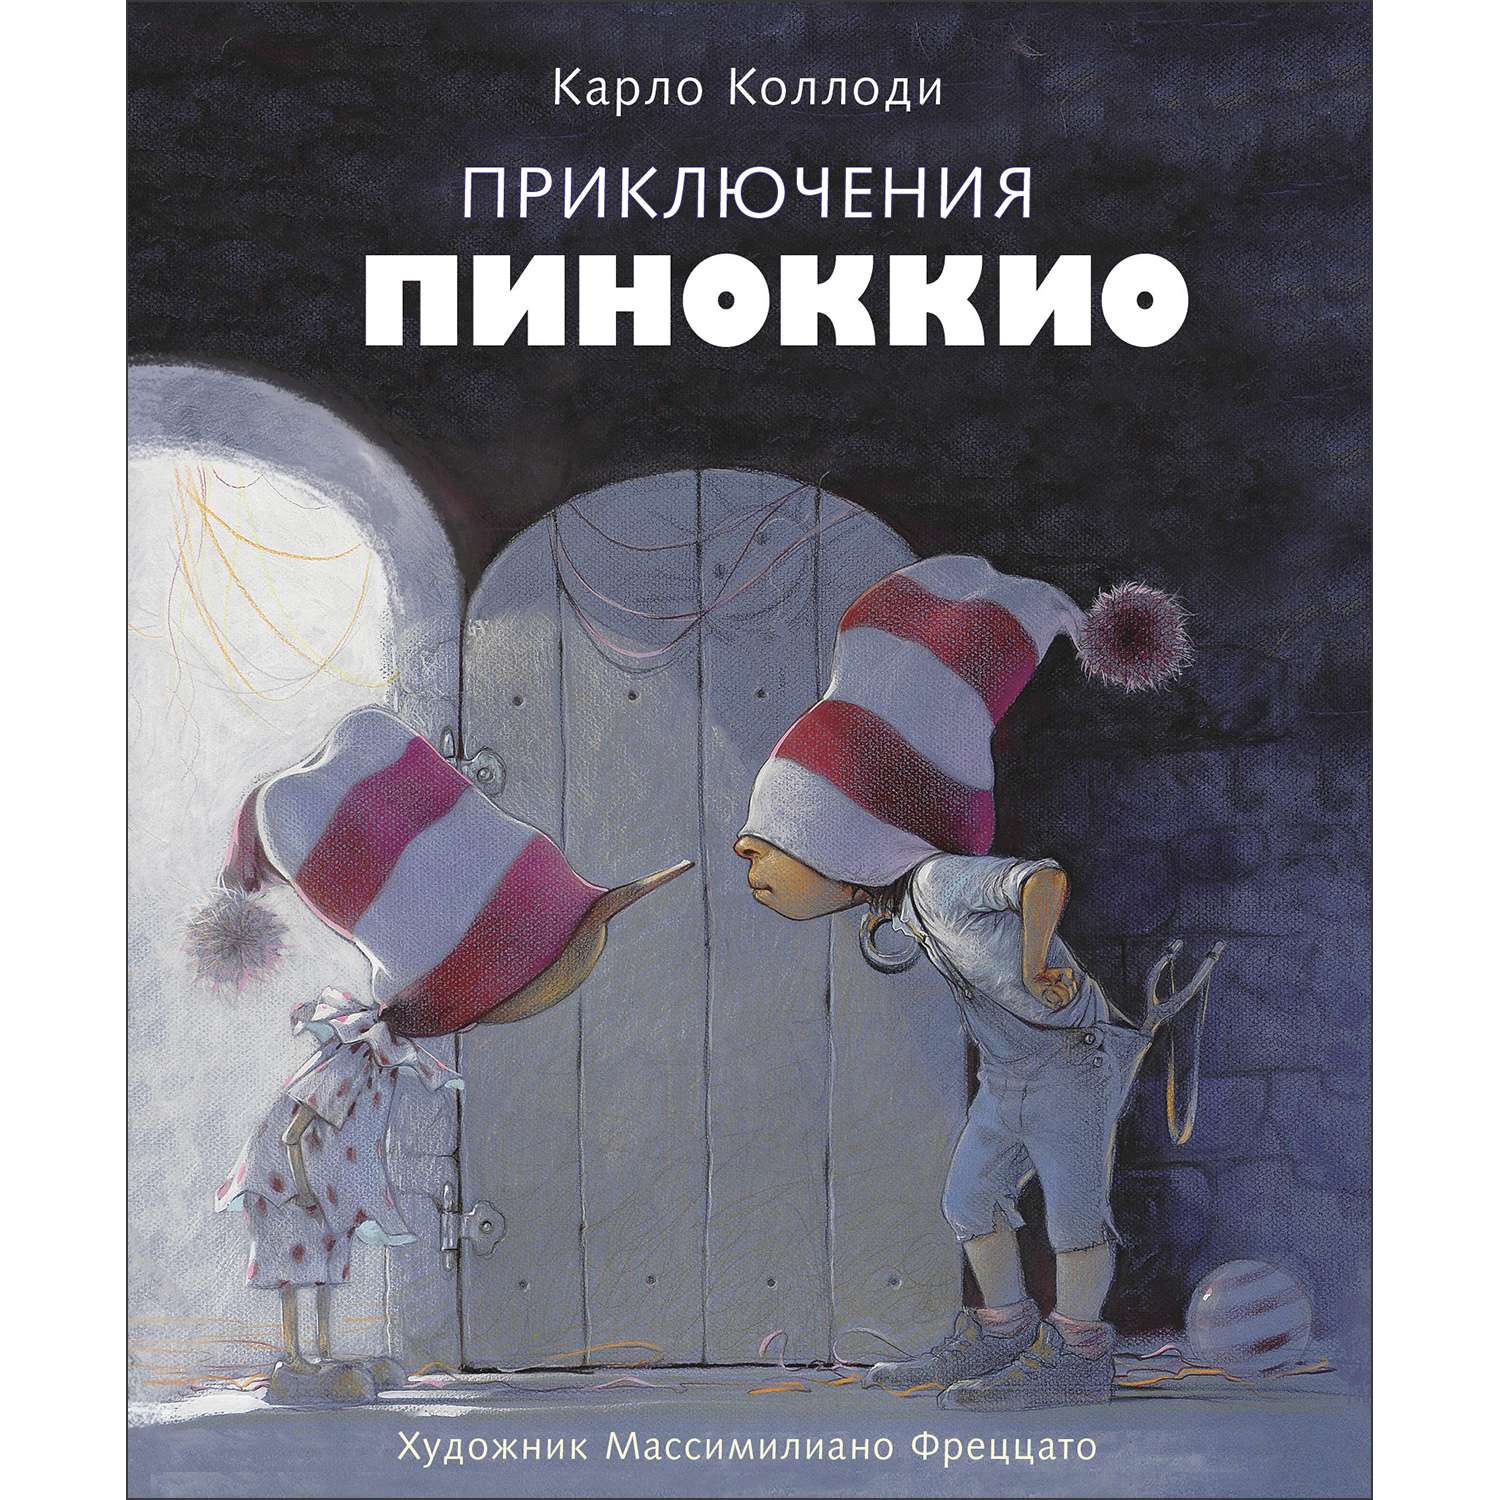 Книга Приключения Пиноккио - фото 1